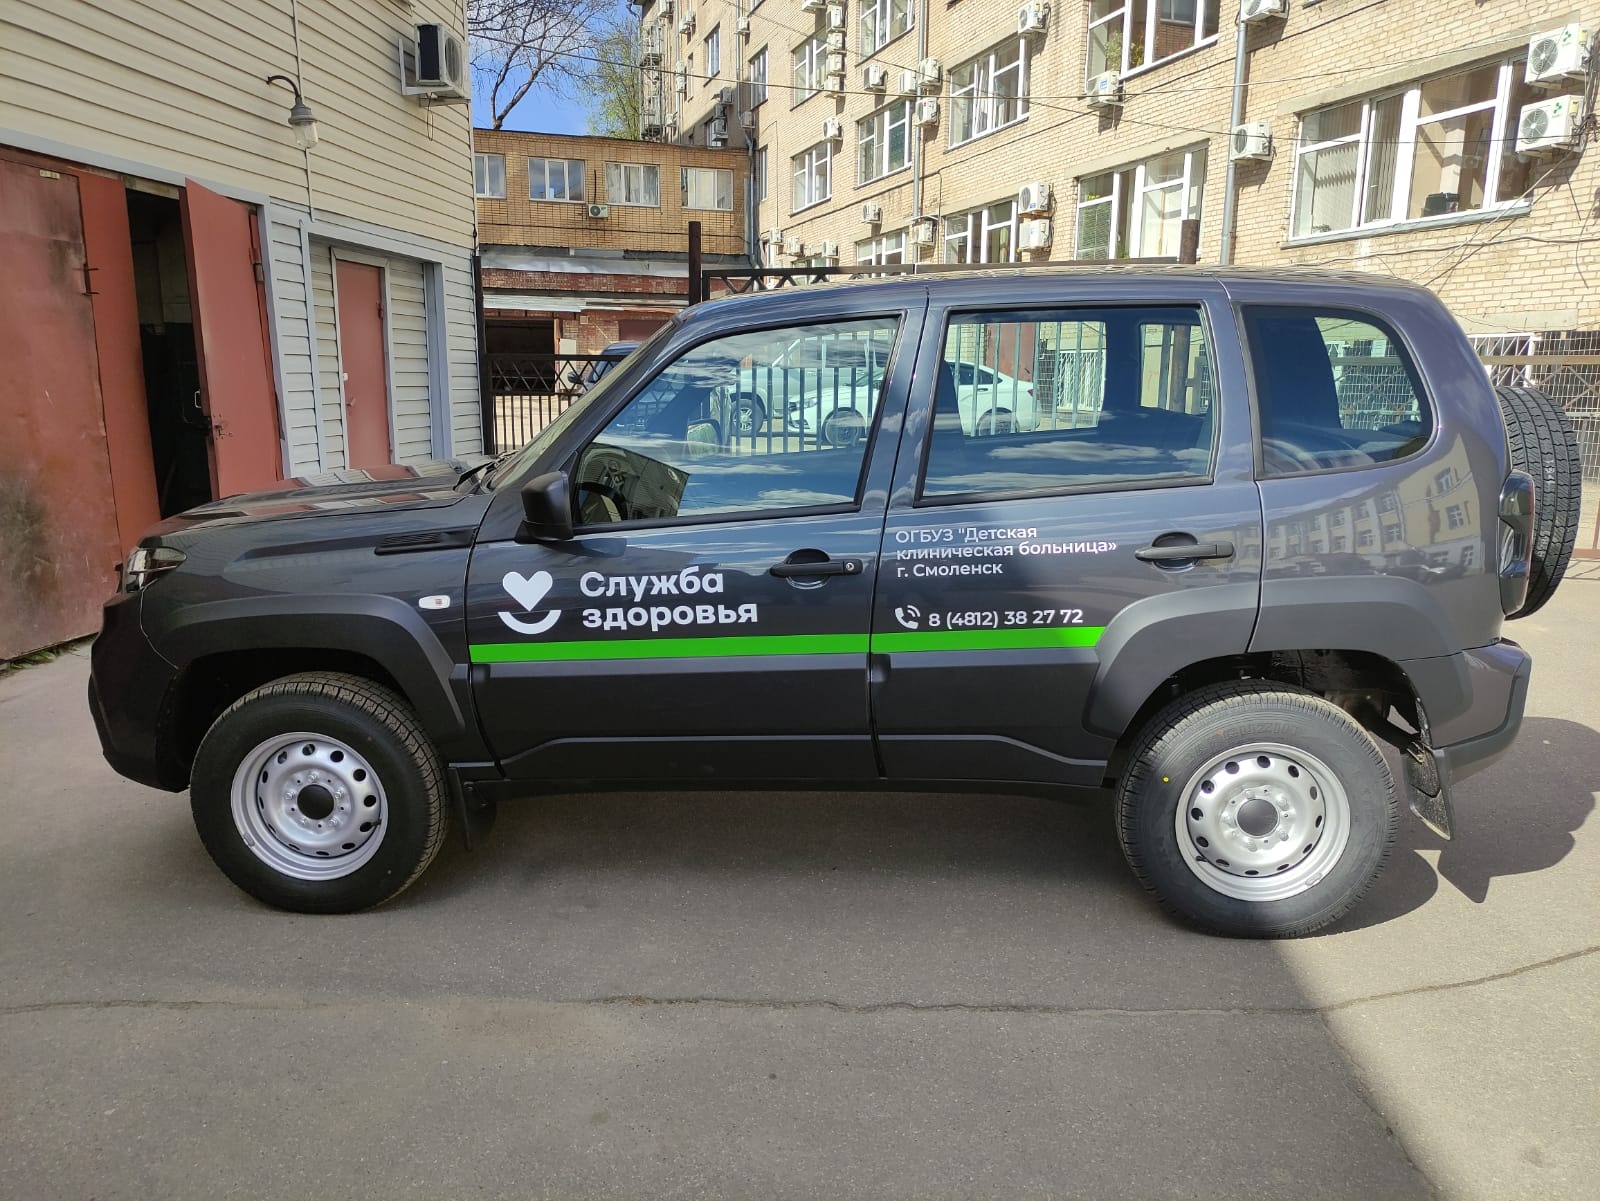 Медицинские организации Смоленской области получат новые автомобили